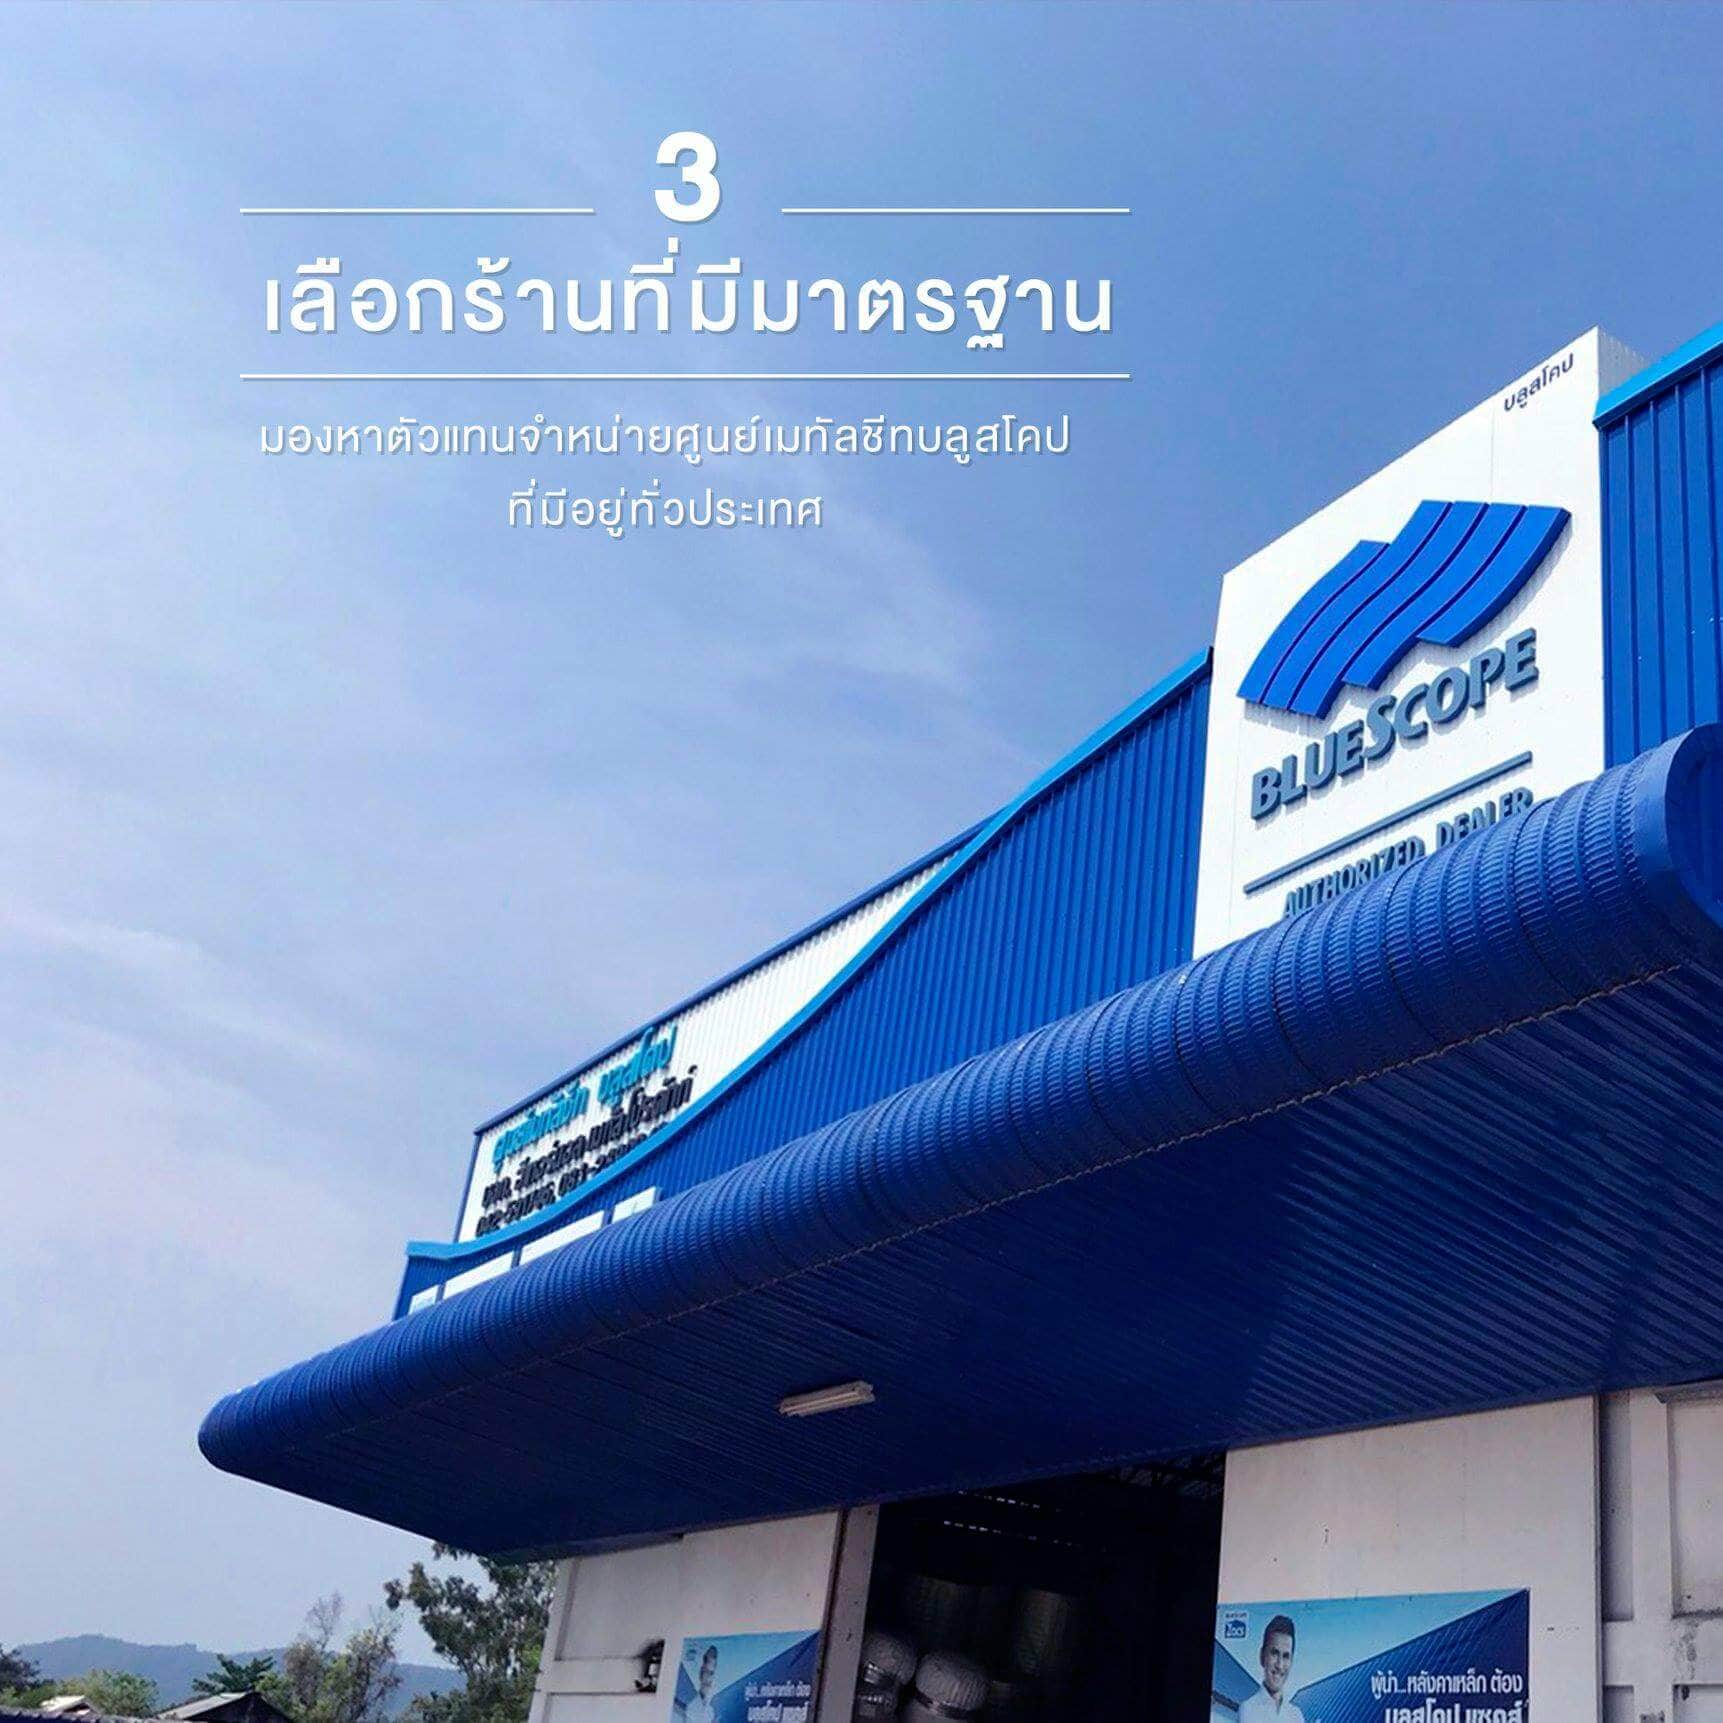 เลือกร้านที่มีมาตรฐาน - 5 ขั้นตอนง่ายๆ ในการเลือกซื้อเมทัลชีท | NS BlueScope Thailand